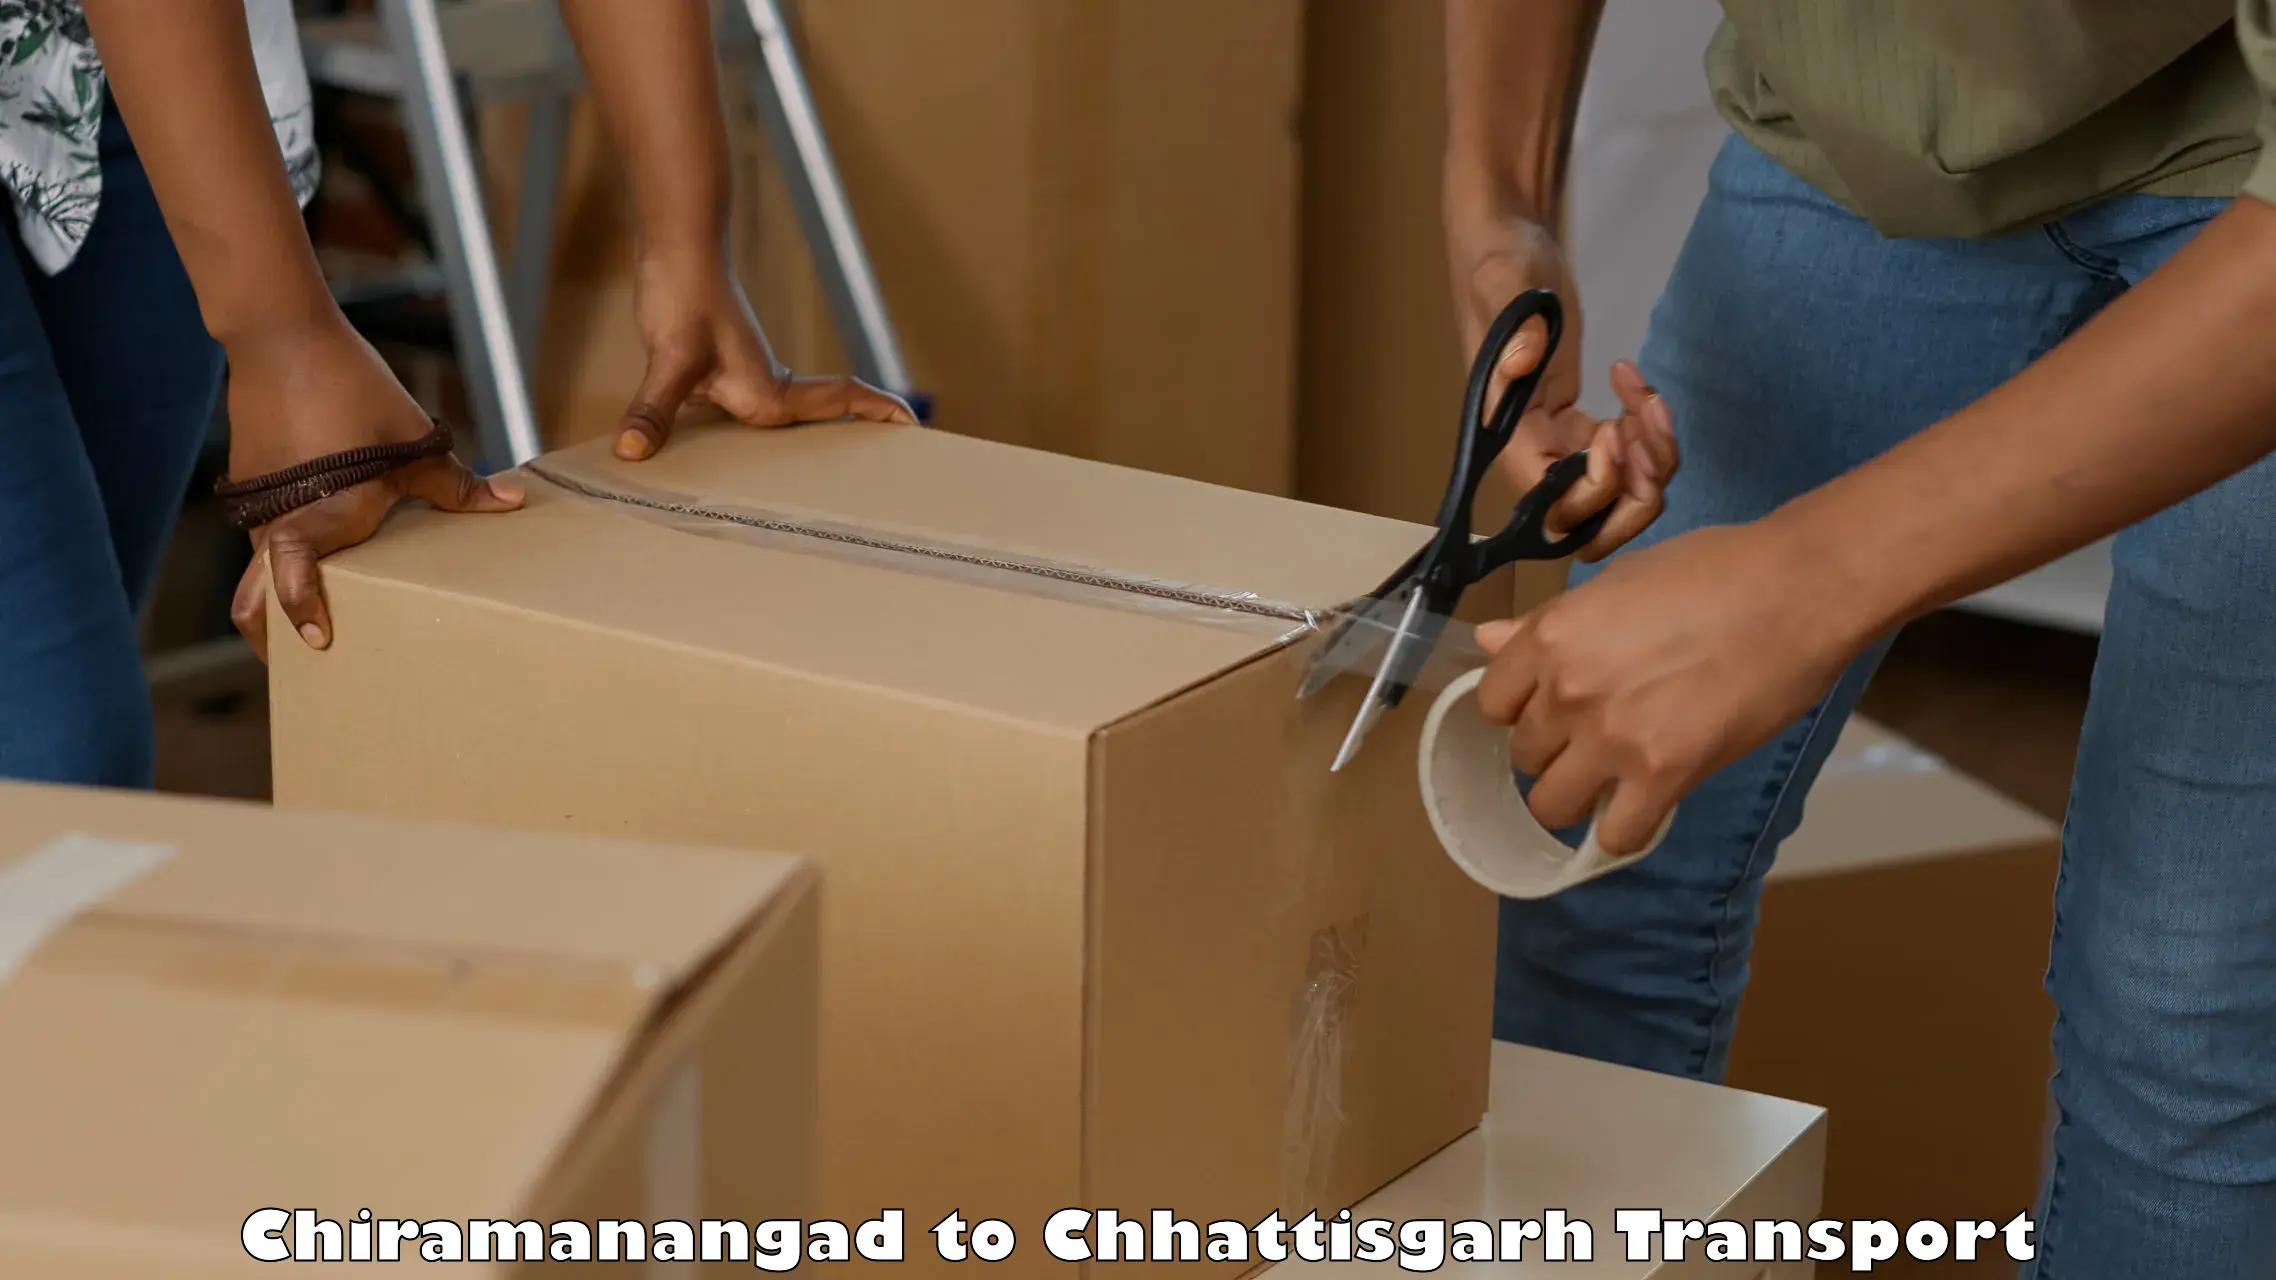 Truck transport companies in India Chiramanangad to Sirpur